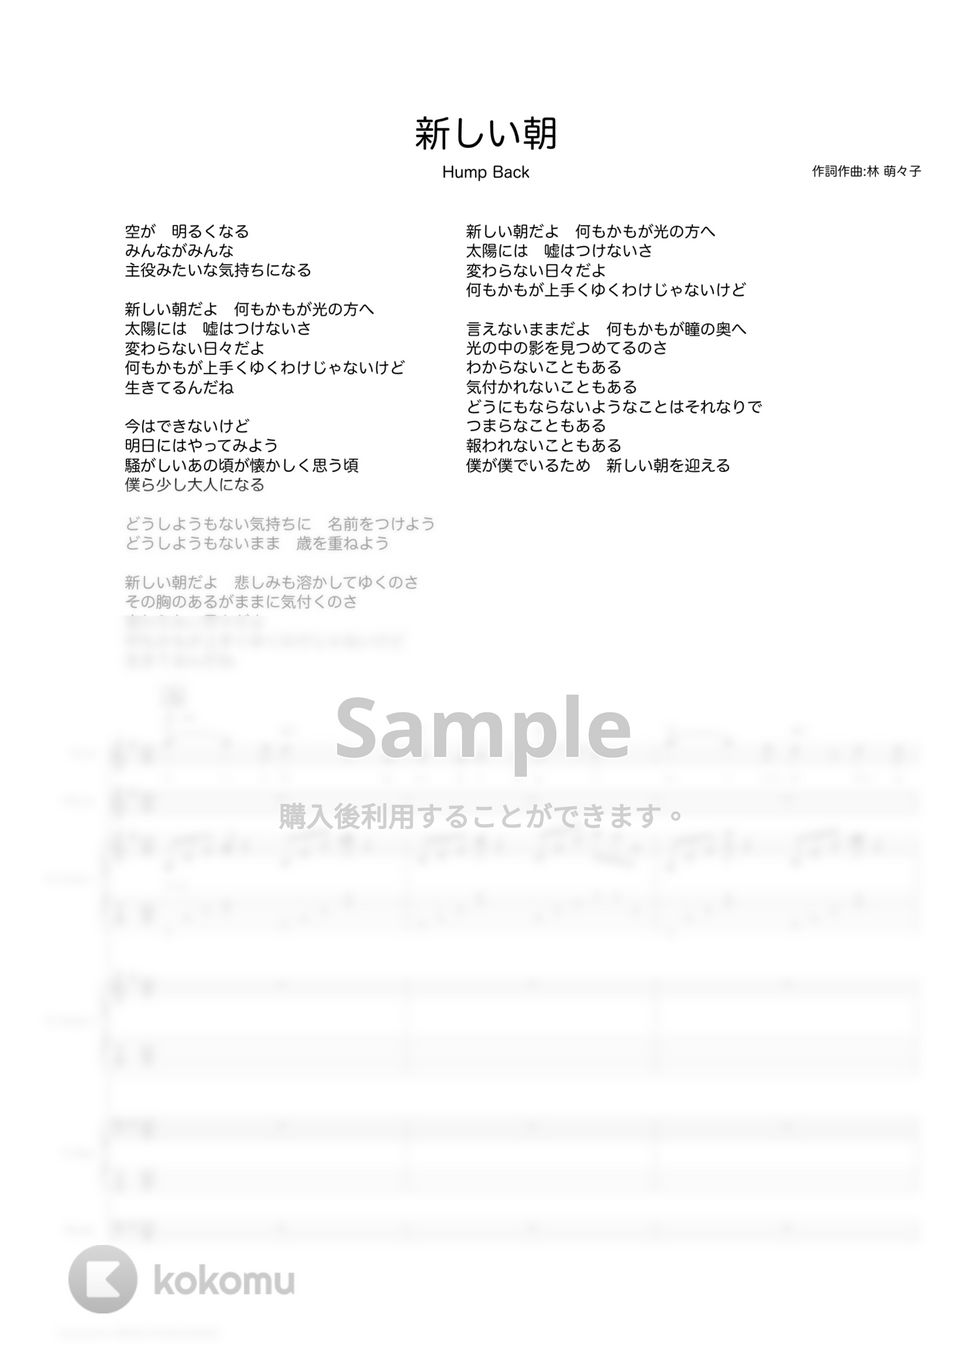 Hump Back - 新しい朝/ (バンドスコア) by TRIAD GUITAR SCHOOL